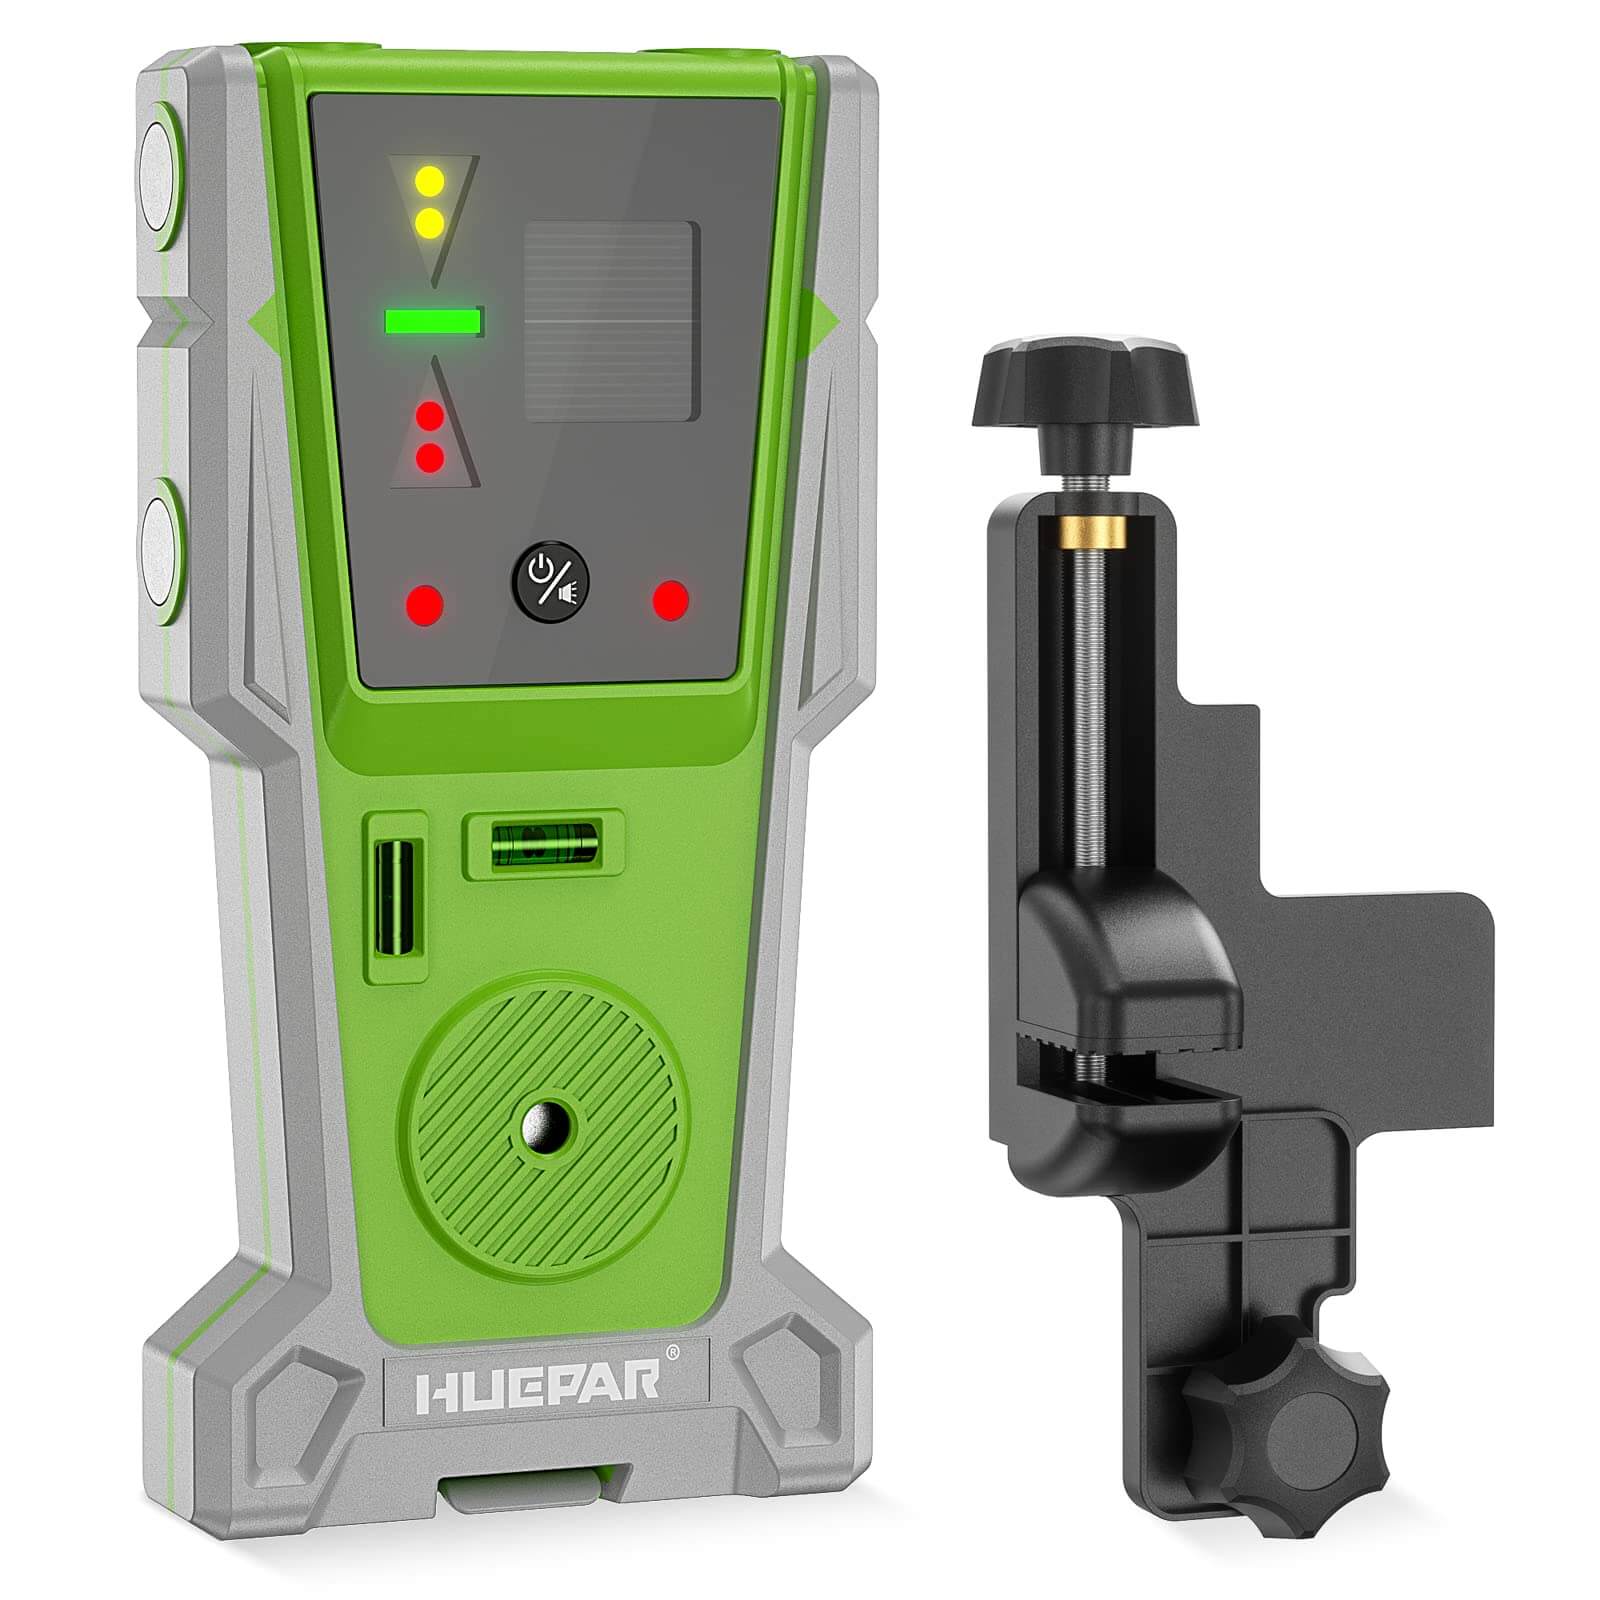 Huepar LR8RG - Laser Detector/Line Laser Receiver